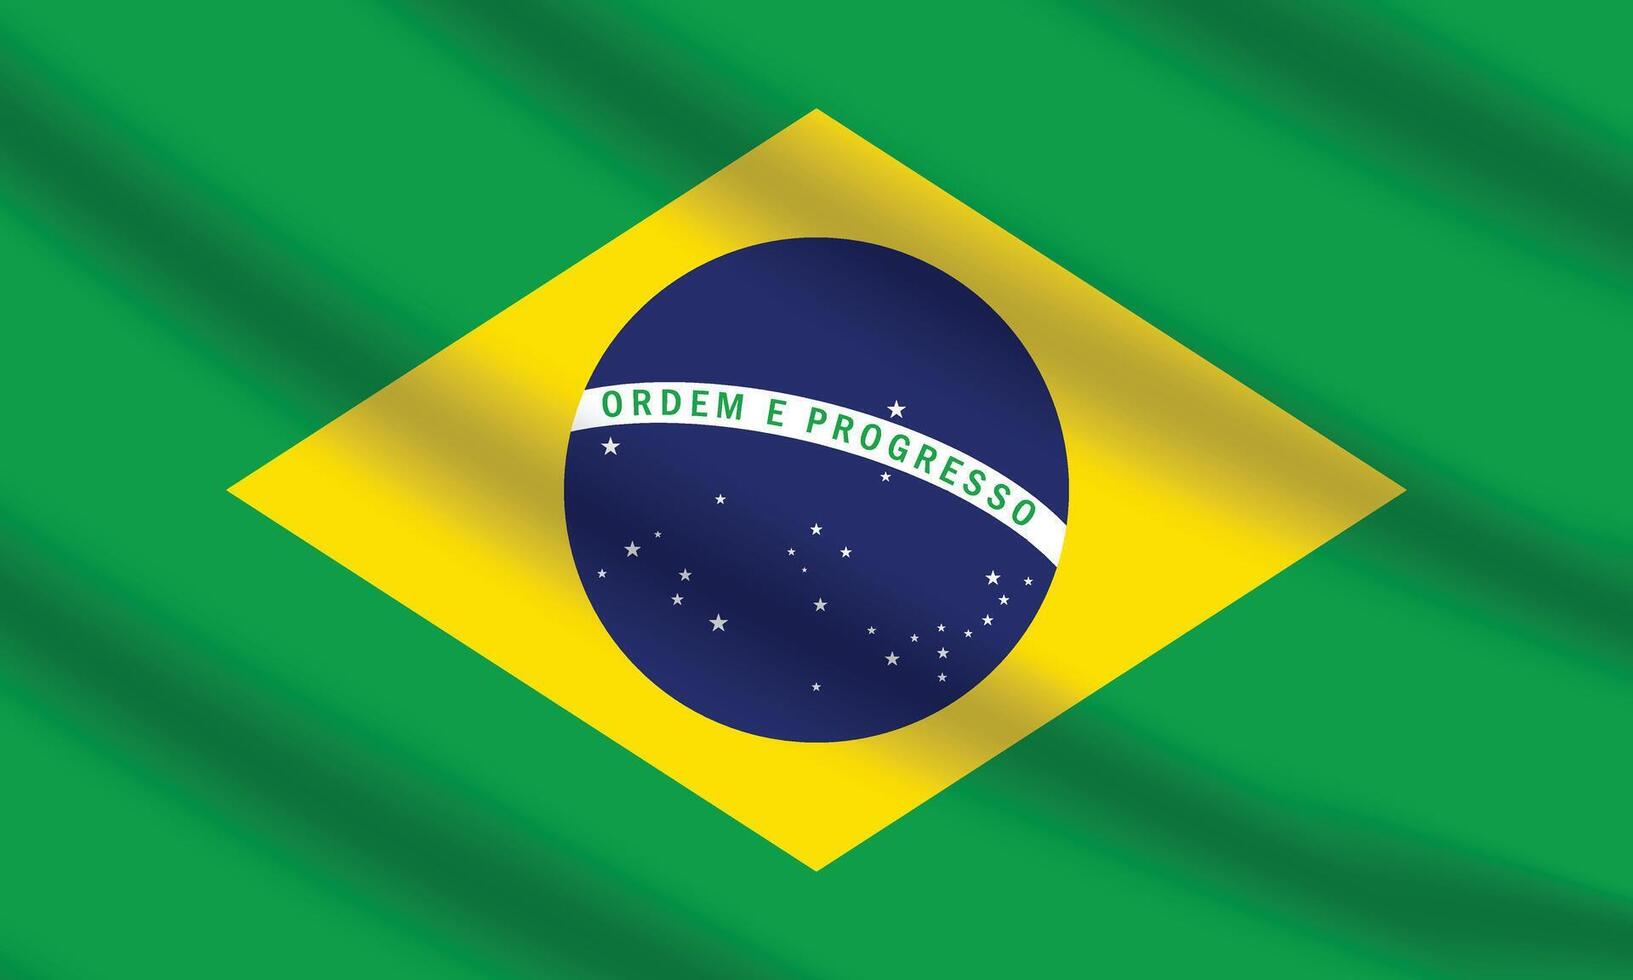 plat illustration de Brésil drapeau. Brésil nationale drapeau conception. Brésil vague drapeau. vecteur